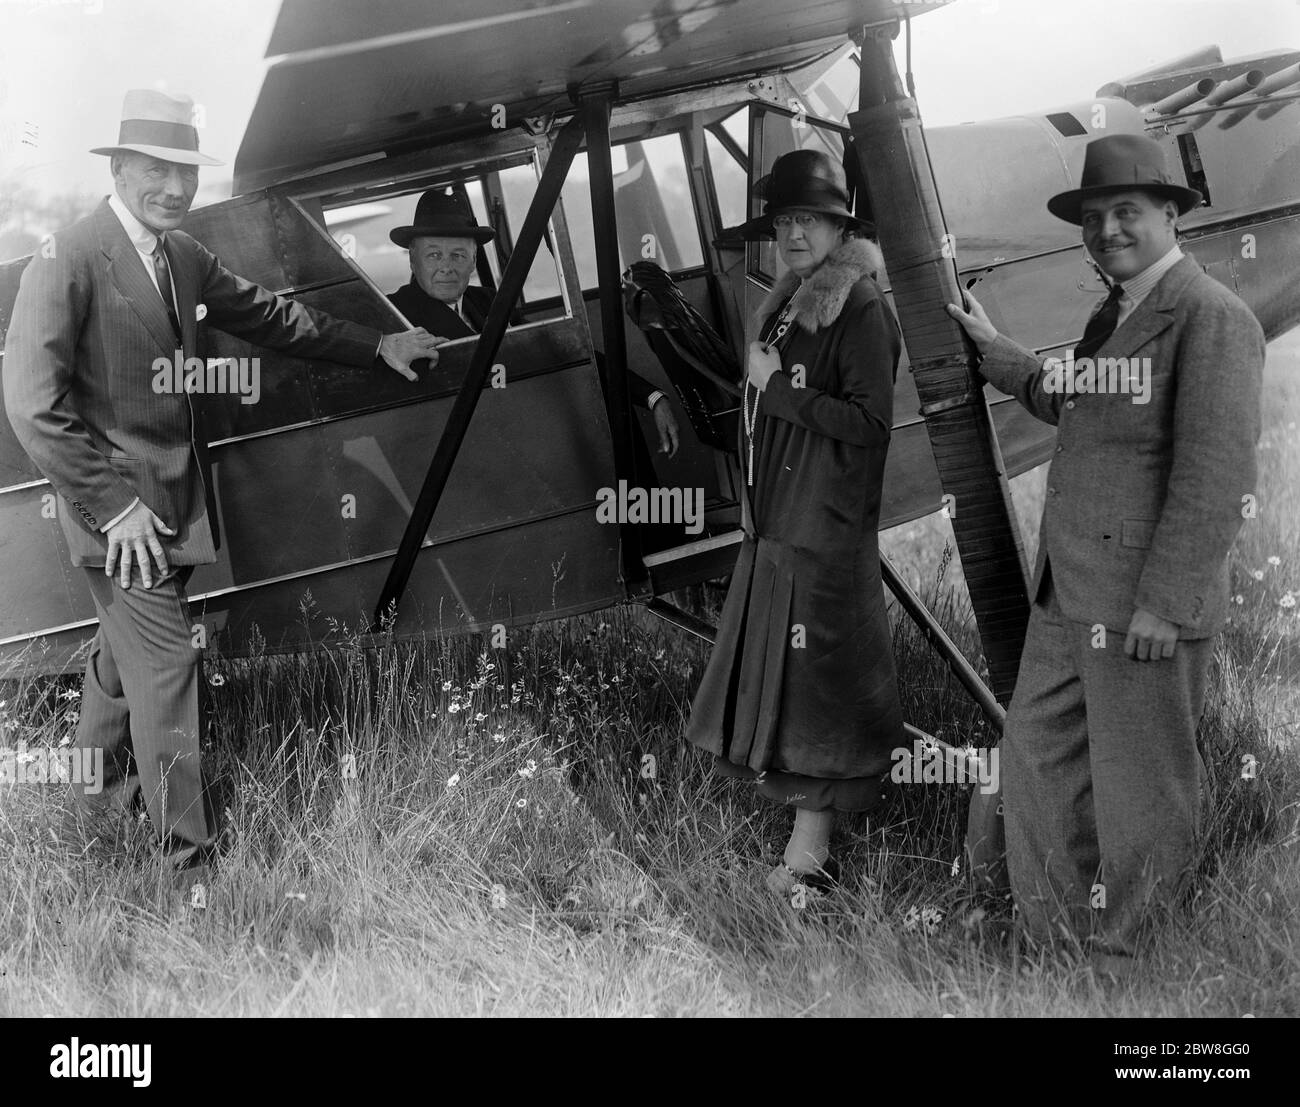 Jix inspiziert neue Lufttaxi-Service . Lord Brentford von Newick, inspizierte den neuen Lufttaxi-Service im London Air Park, Hanworth. Lord Brentford nimmt Platz in einem der neuen Flugzeuge. An der Seite ist Lady Brentford zu sehen. 14 Juni 1930 Stockfoto